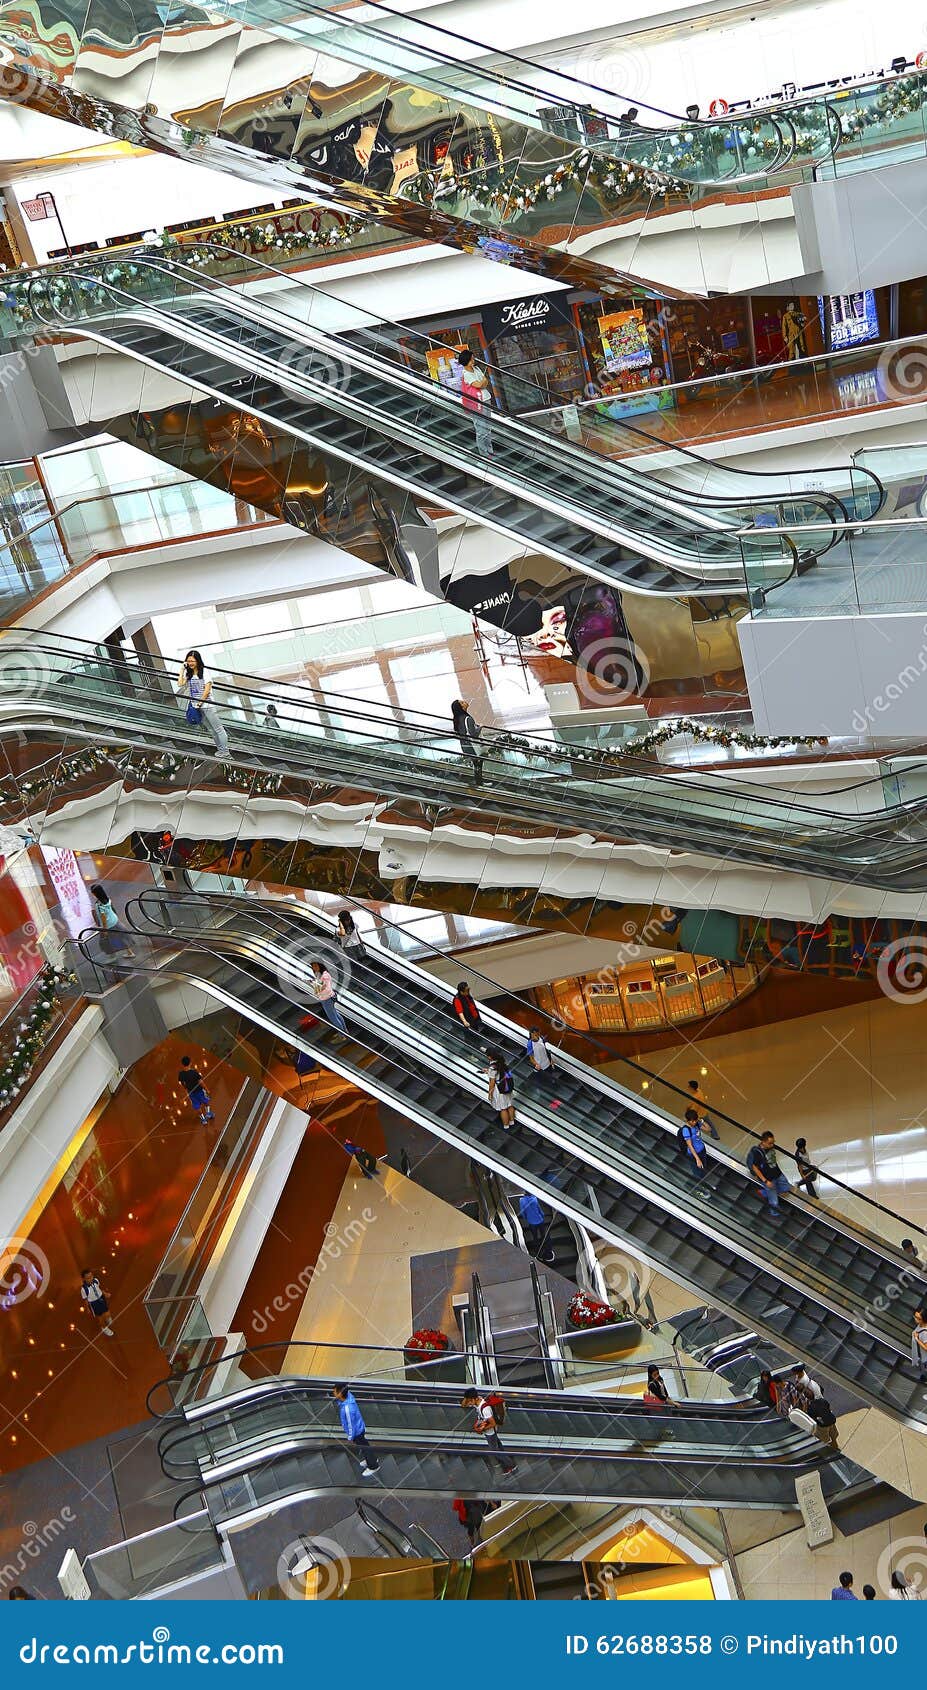 Festival Walk Shopping Mall, Hong Kong Editorial Stock Photo - Image of ...